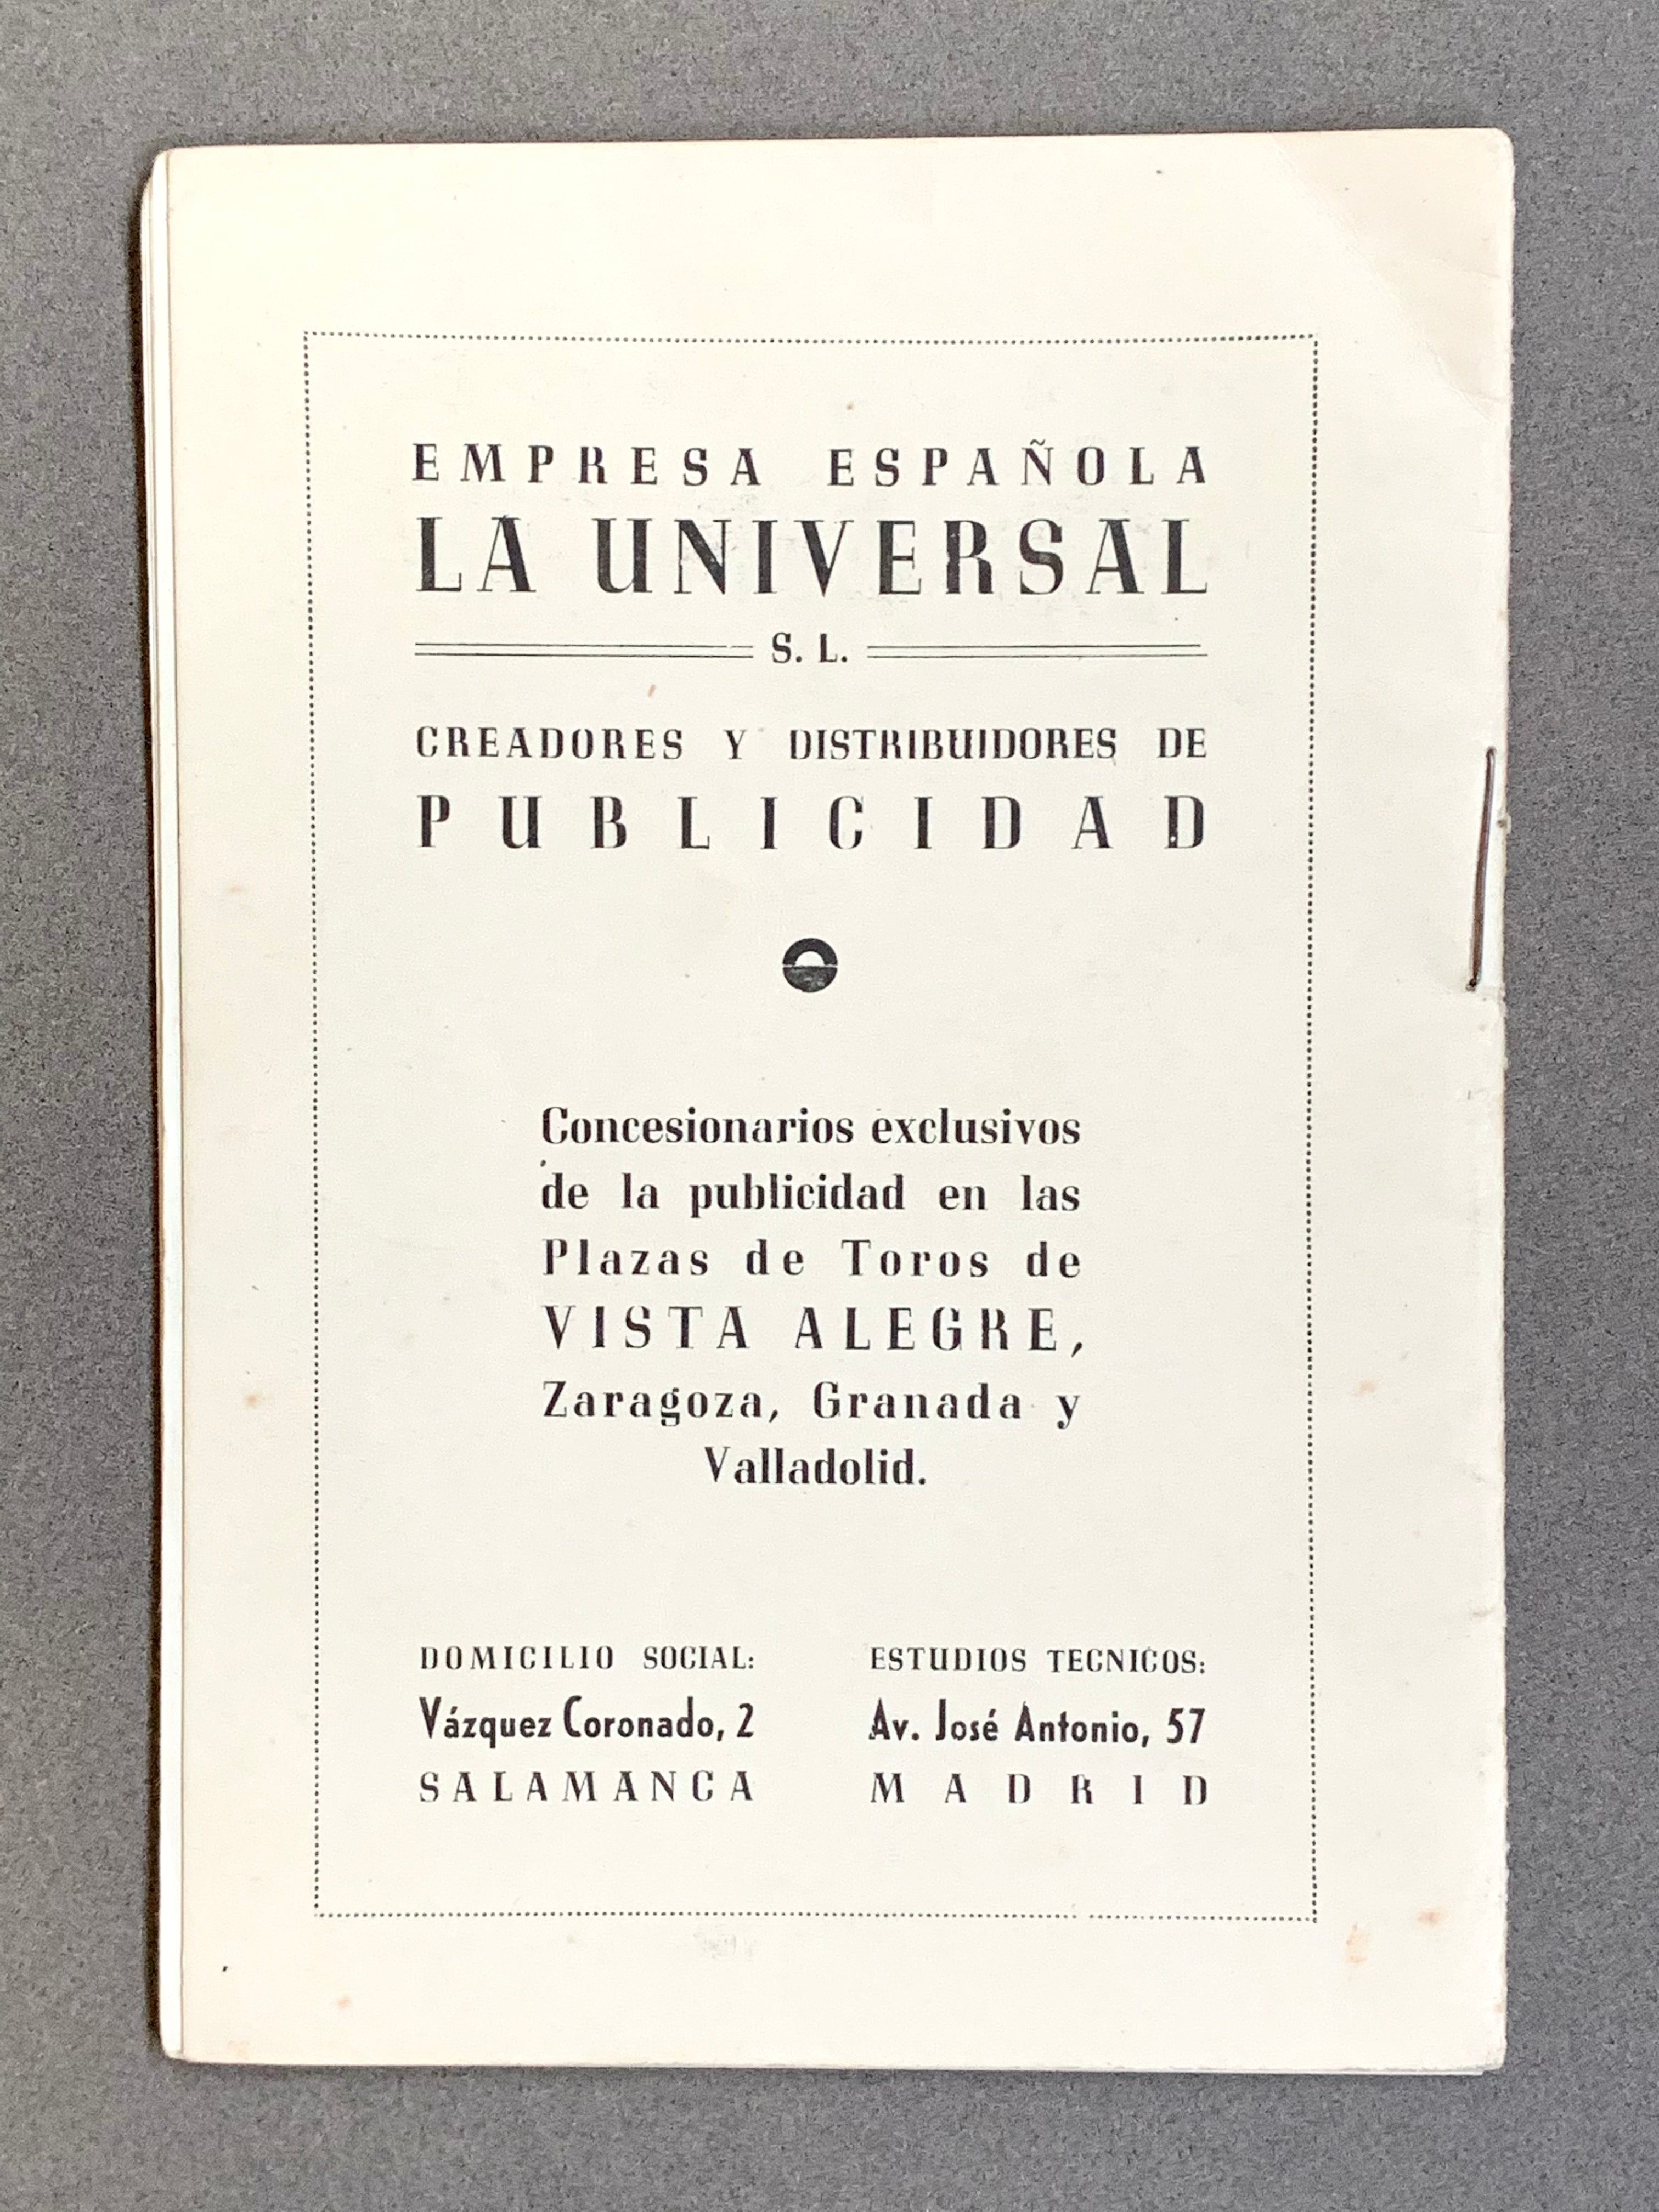 Plaza de Toros de Vista Alegre; Temporada 1949; Programa Oficial; Collectible Paper Ephemera Spain; Matador; Bullfighter